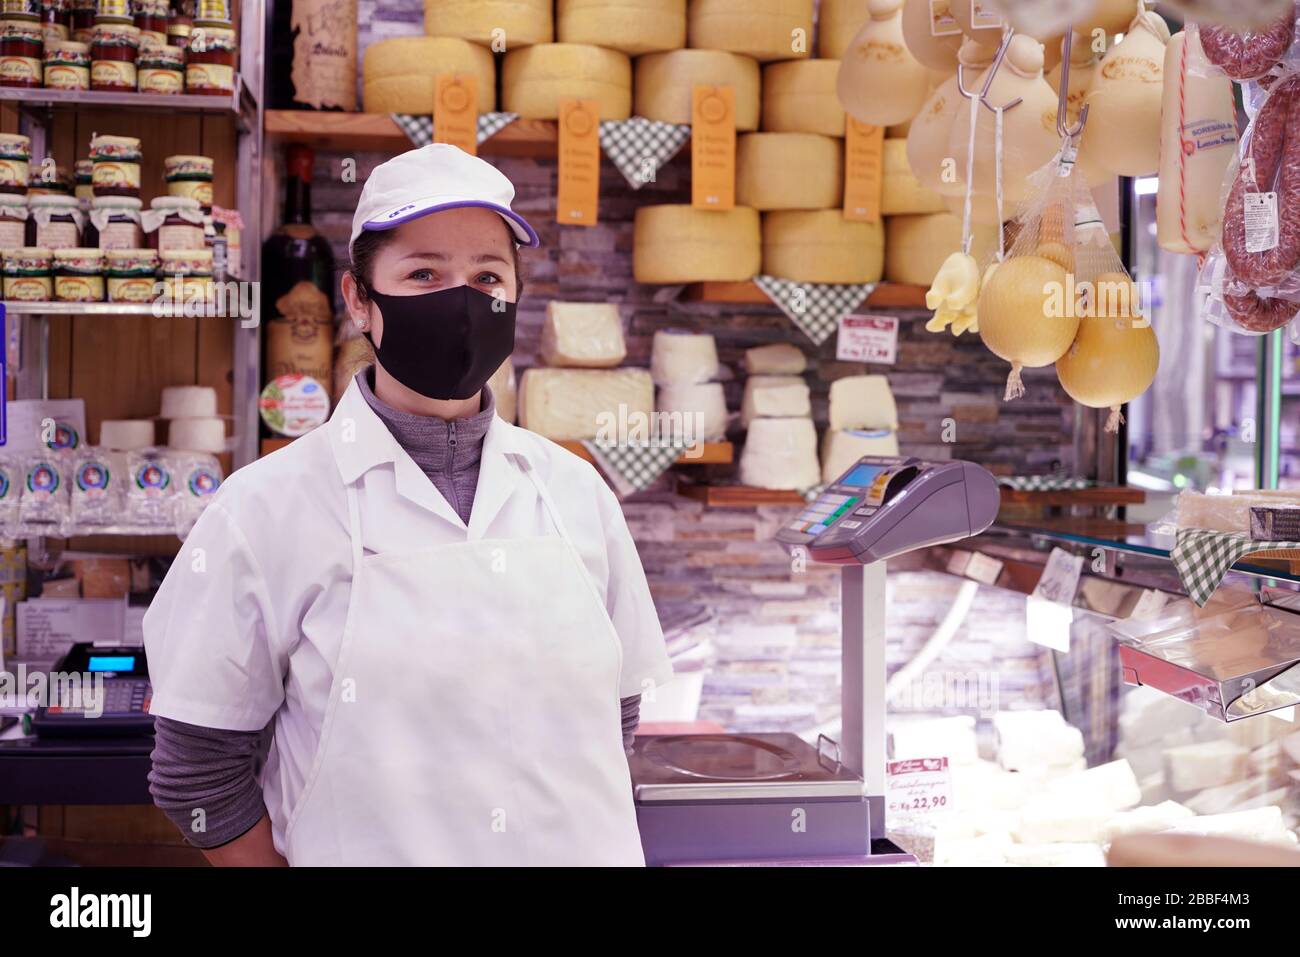 Un assistant de magasin de fromage portant un masque de protection covid-19. Milan, Italie - mars 2020 Banque D'Images